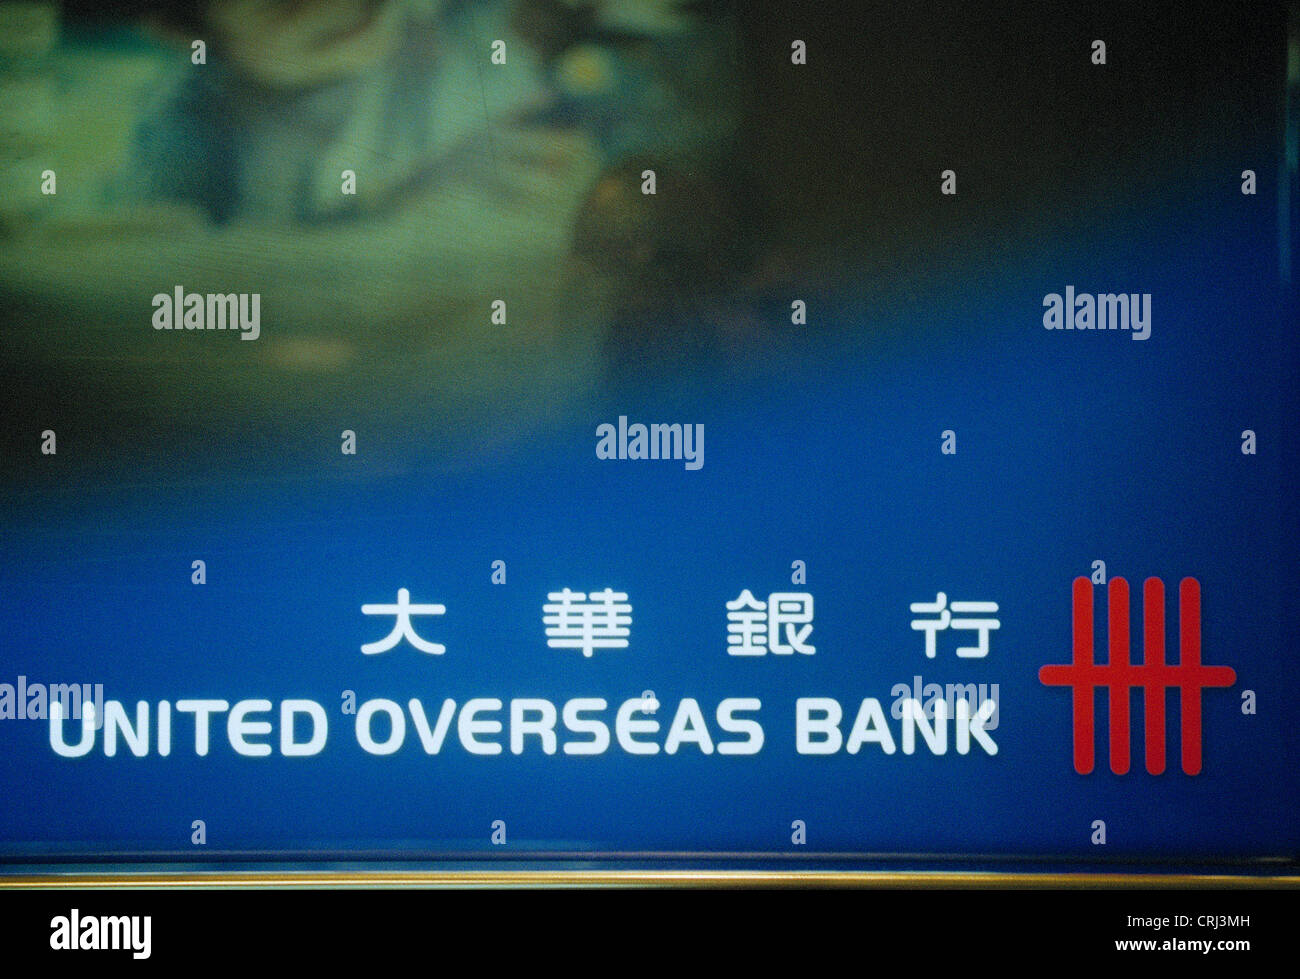 Illuminated billboard of United Overseas Bank Stock Photo